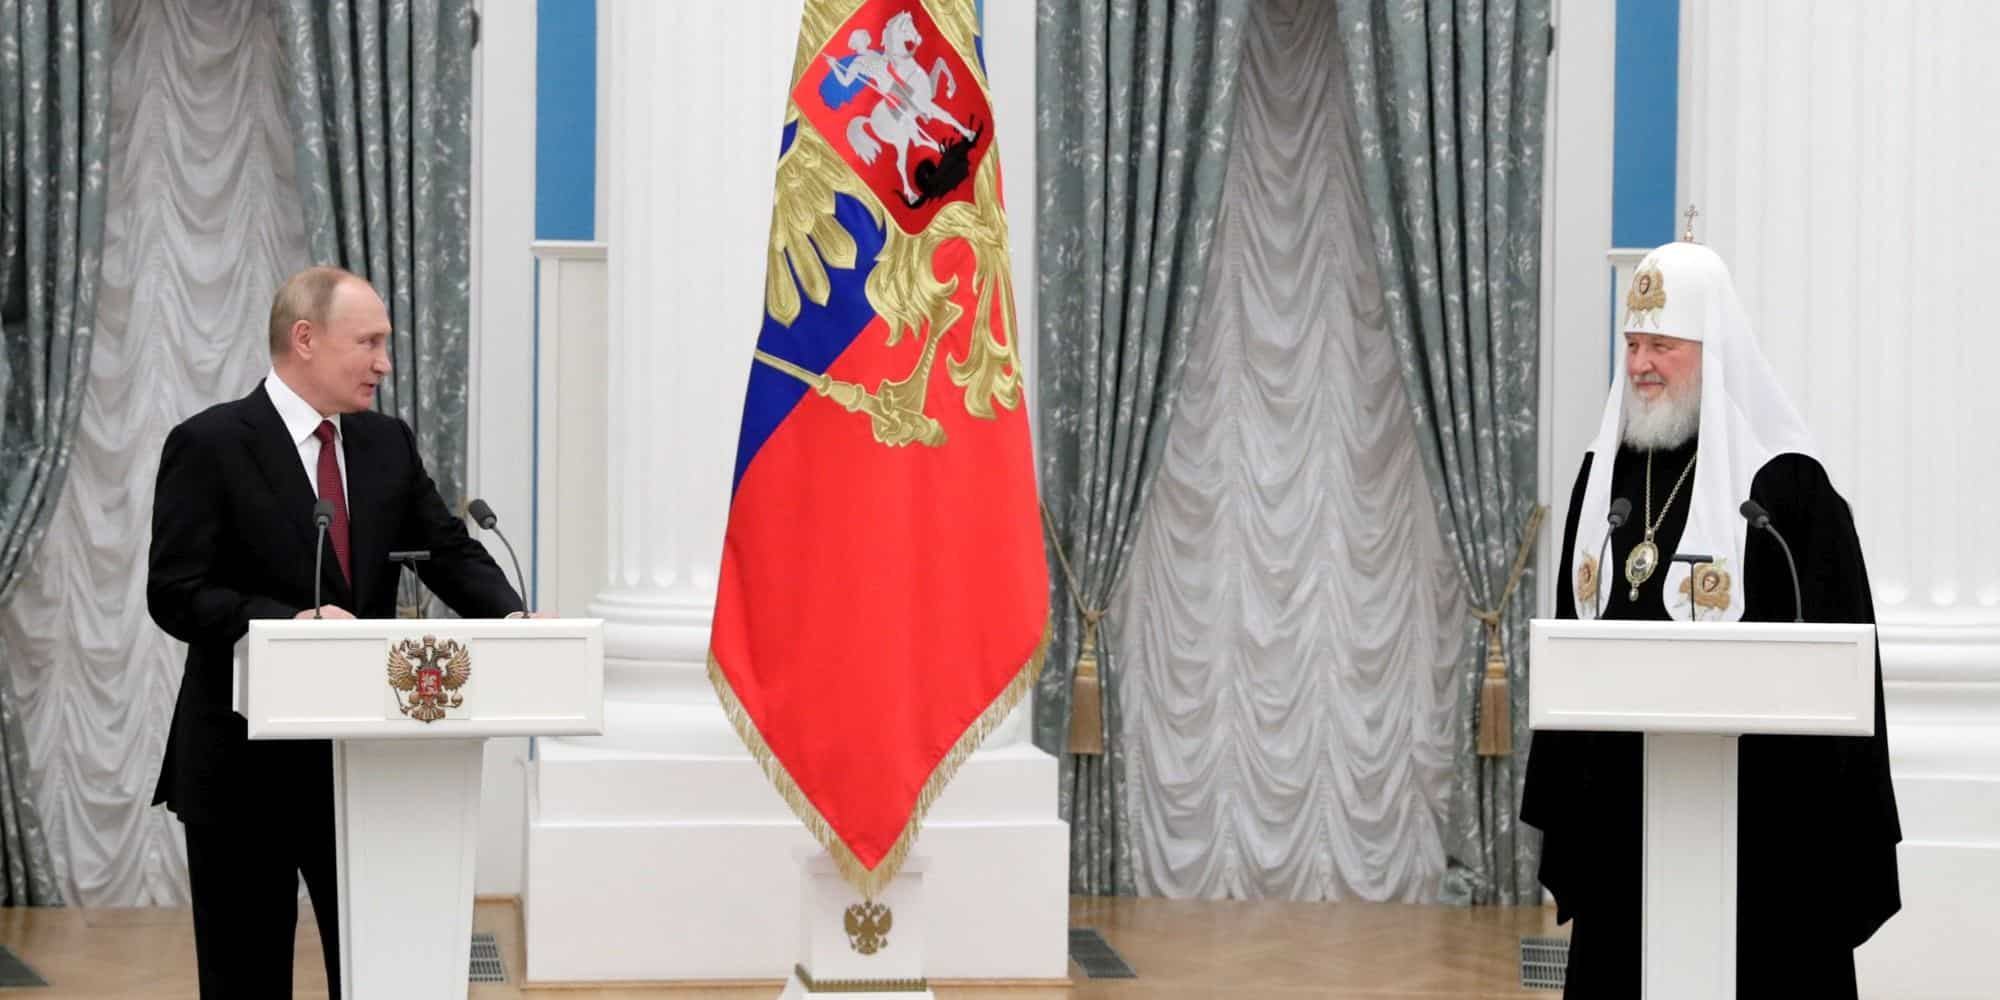 Ο Βλαντιμίρ Πούτιν και ο Πατριάρχης Μόσχας Κύριλλος